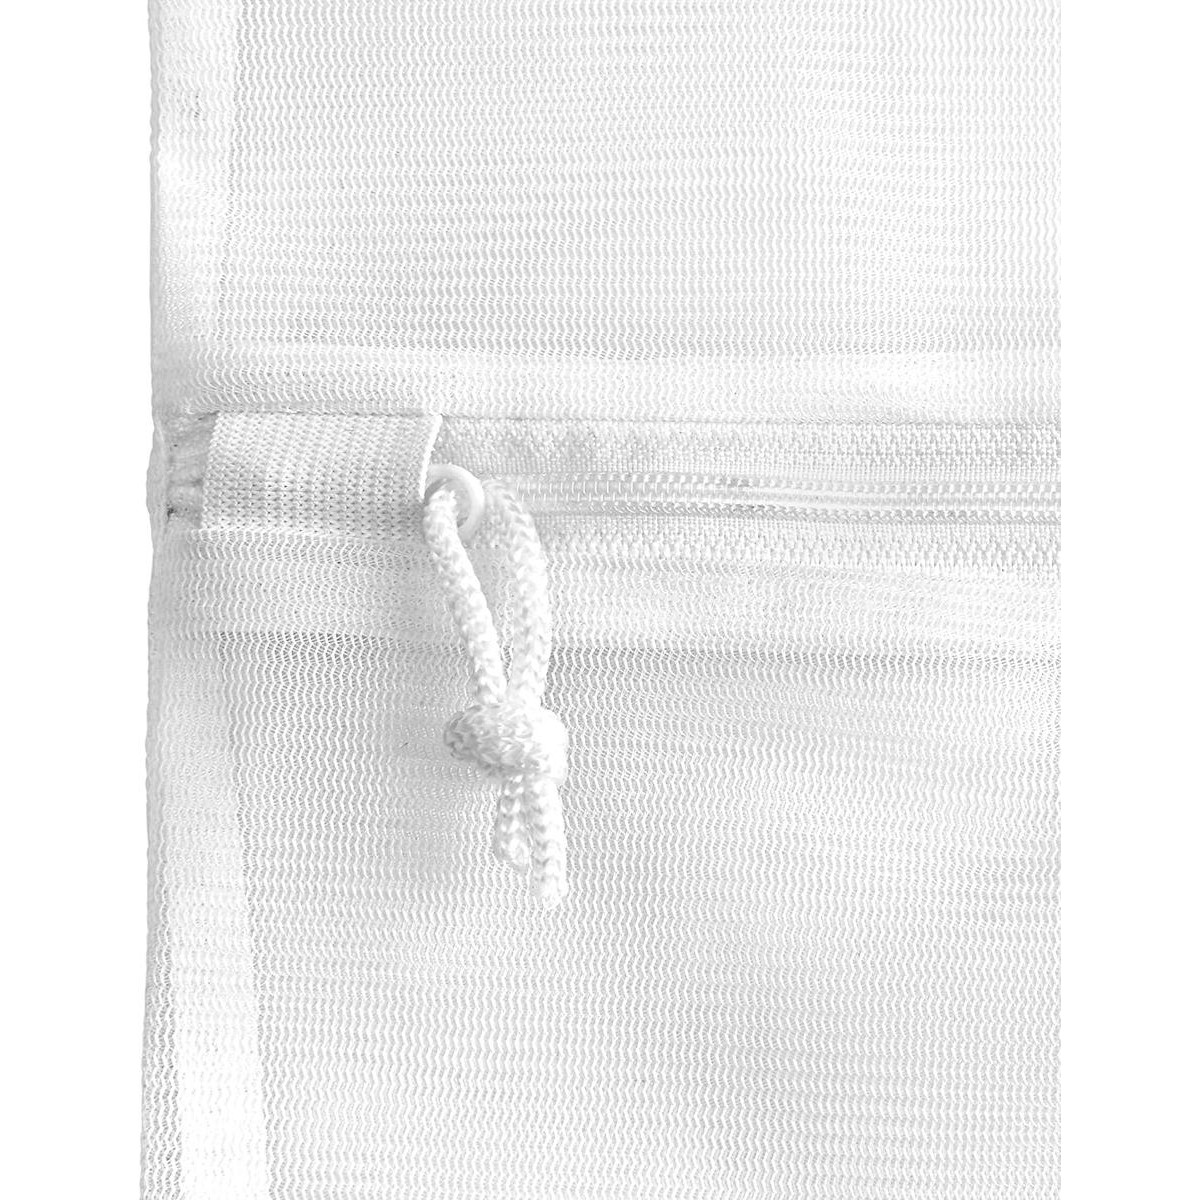 Rayen Δίχτυ Πλυντηρίου small για Ρούχα 30x40cm (6197.01)